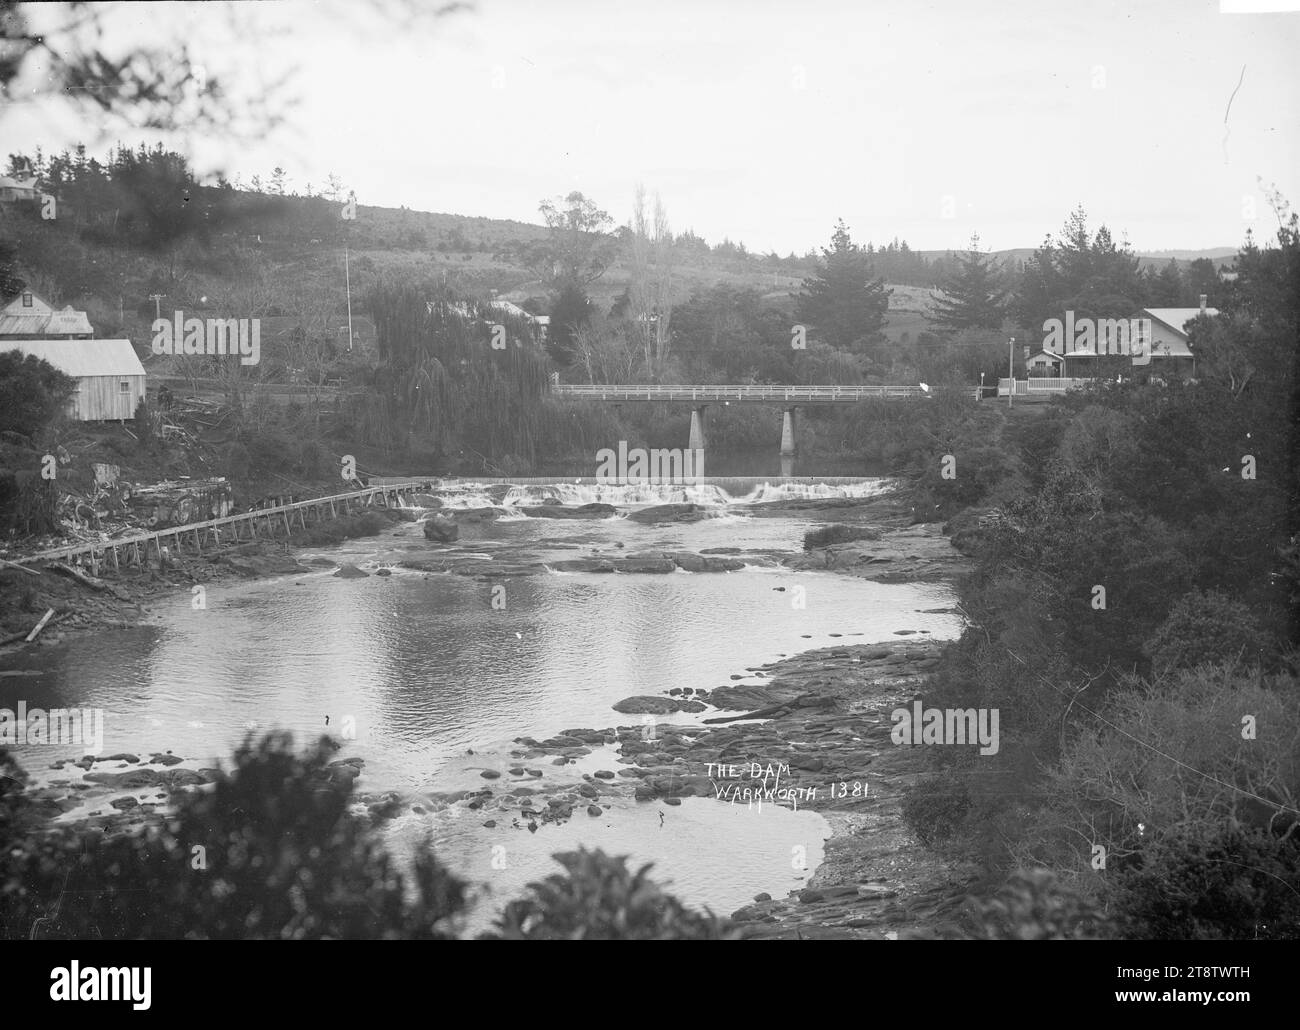 Les chutes et le pont à Warkworth montrent le barrage de Warkworth et les chutes sur la rivière Mahurangi, et le pont traversant la rivière. En arrière-plan (partiellement obscurci par des arbres), au bout du pont, se trouve une habitation, ca 1910 Banque D'Images